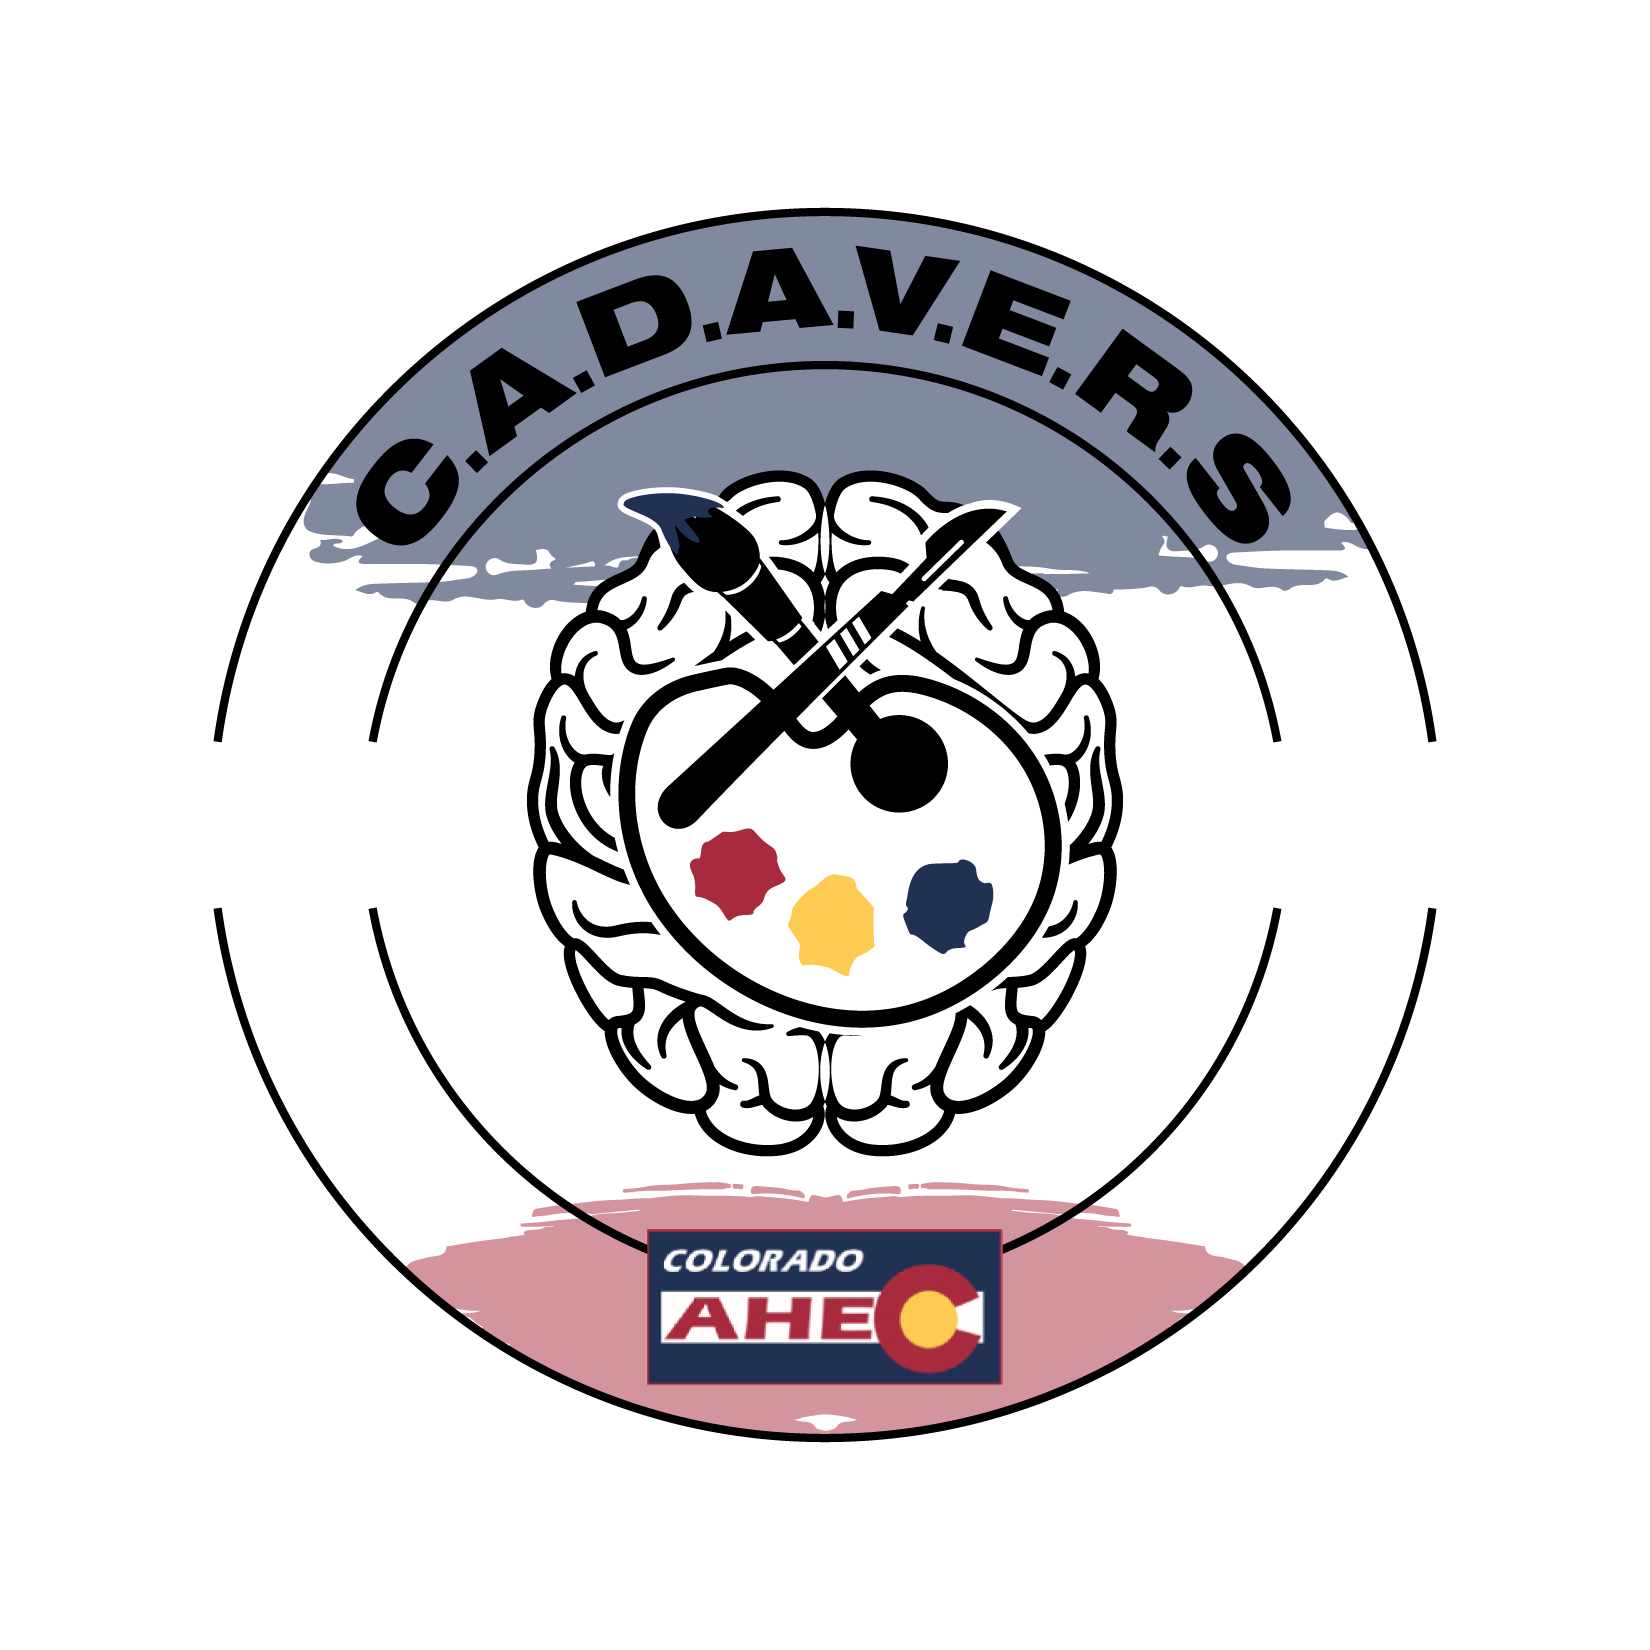 CADAVERS Program Logo FINAL